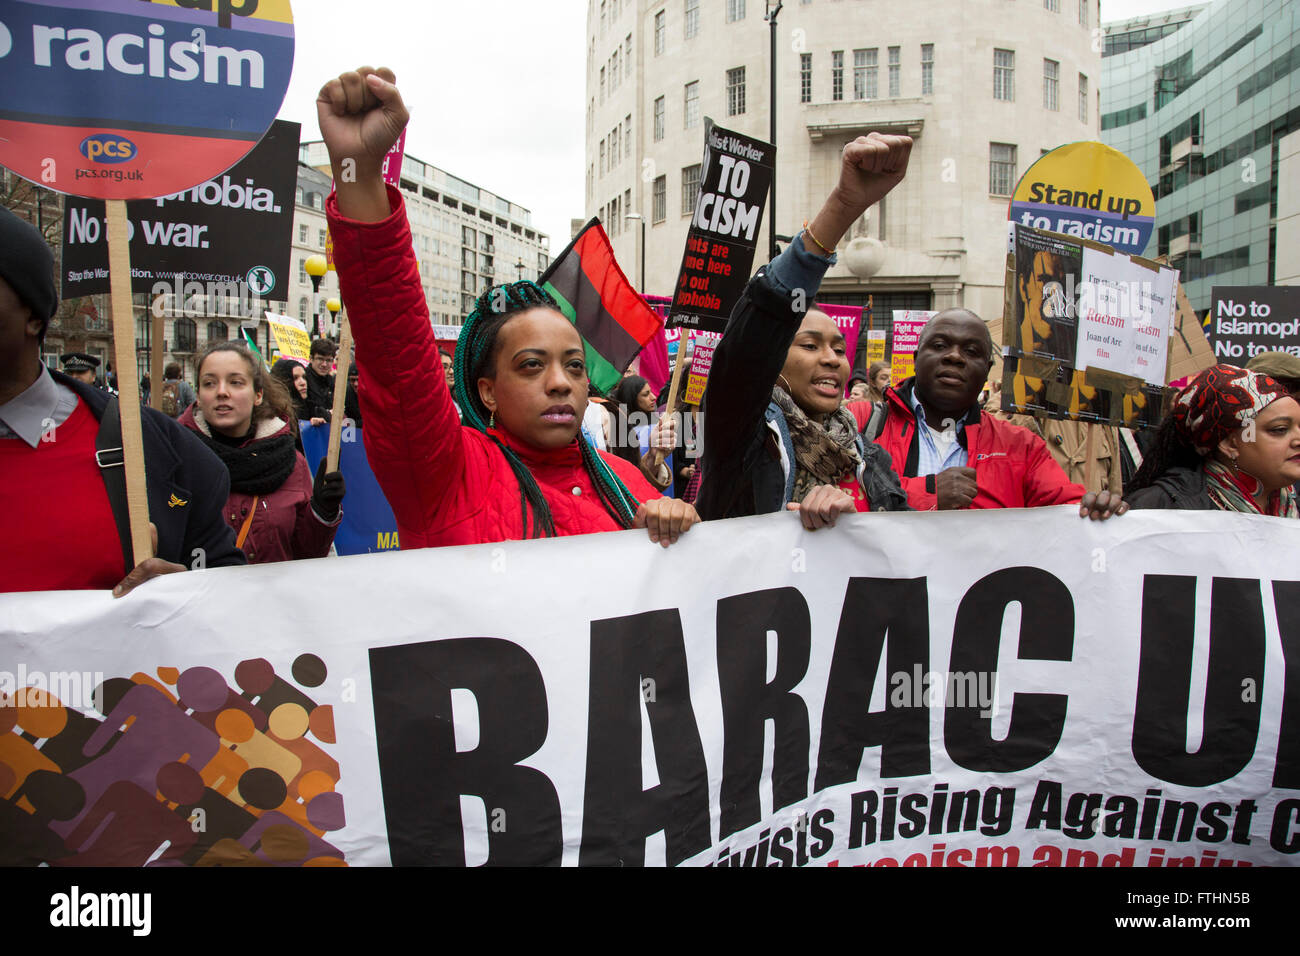 Schwarze Aktivisten steigt gegen Kürzungen Demonstranten protestieren mit ihren Fäusten auf Anti-Rassismus-Day Demonstration angeführt von stehen bis zum Rassismus am 19. März 2016 in London, Vereinigtes Königreich angesprochen. Stehen bis zum Rassismus hat einige der größten antirassistischen Mobilisierungen in Großbritannien im letzten Jahrzehnt geführt, Stellung gegen Faschismus, Rassismus, Islamophobie und Antisemitismus zu protestieren. Stockfoto